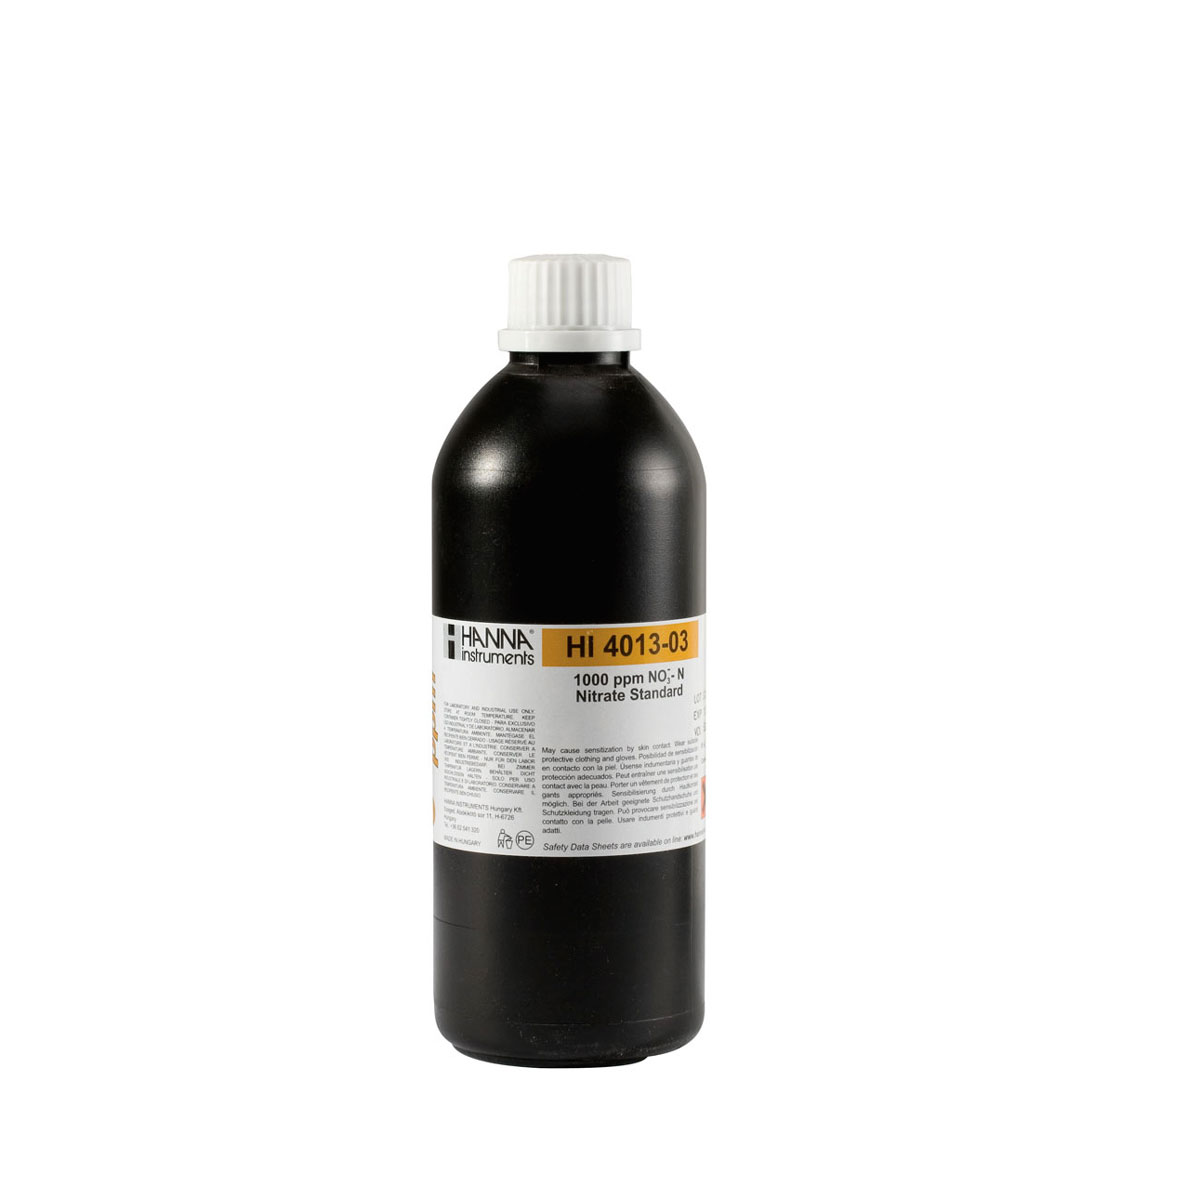 HI4013-03 Nitrate Standard 1000 mg/L (ppm) (500 mL)